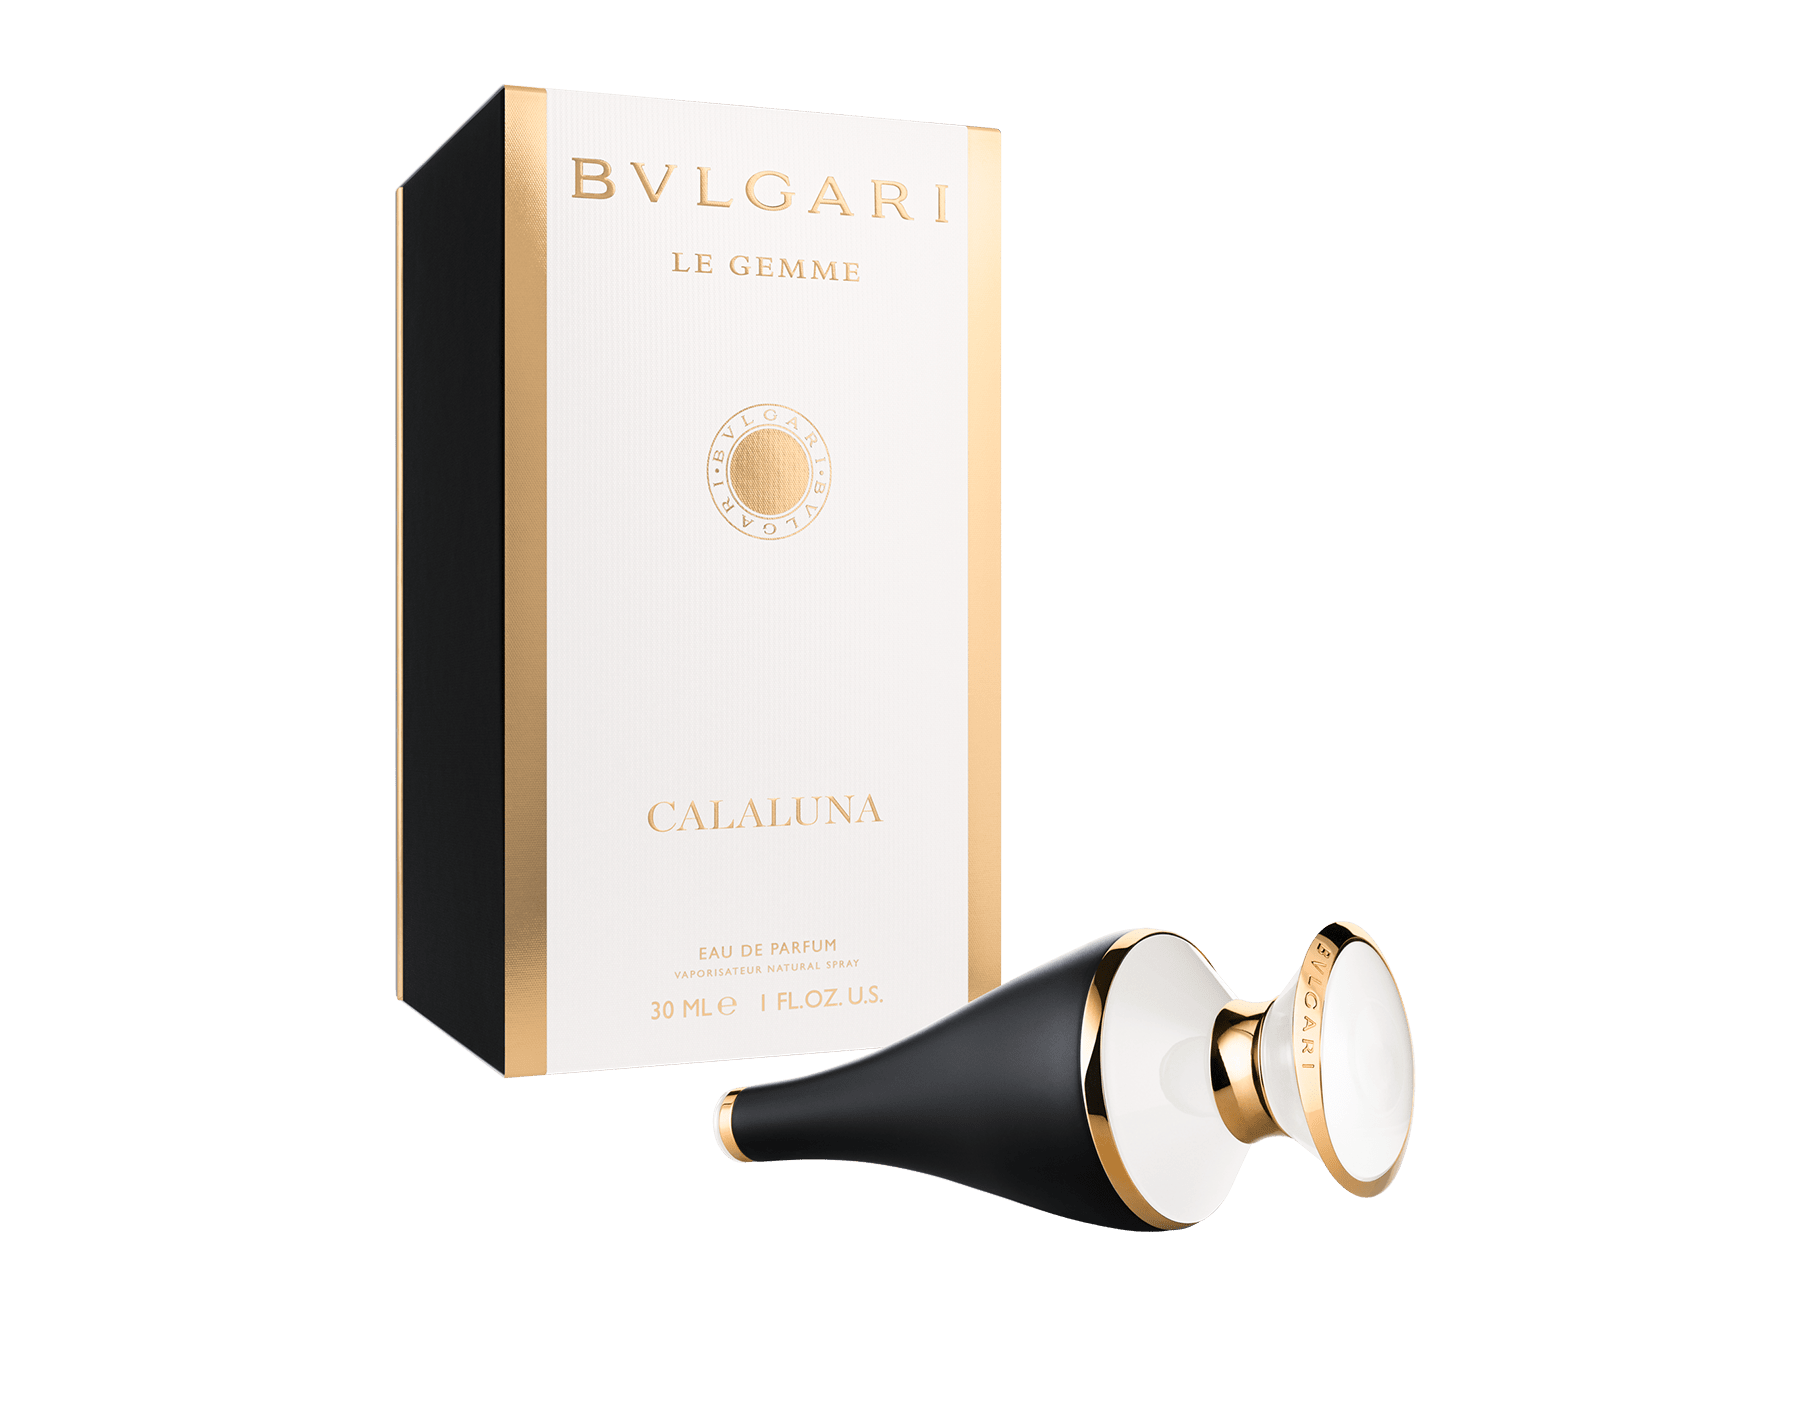 Le Gemme Calaluna Eau de Parfum 1 oz/30 